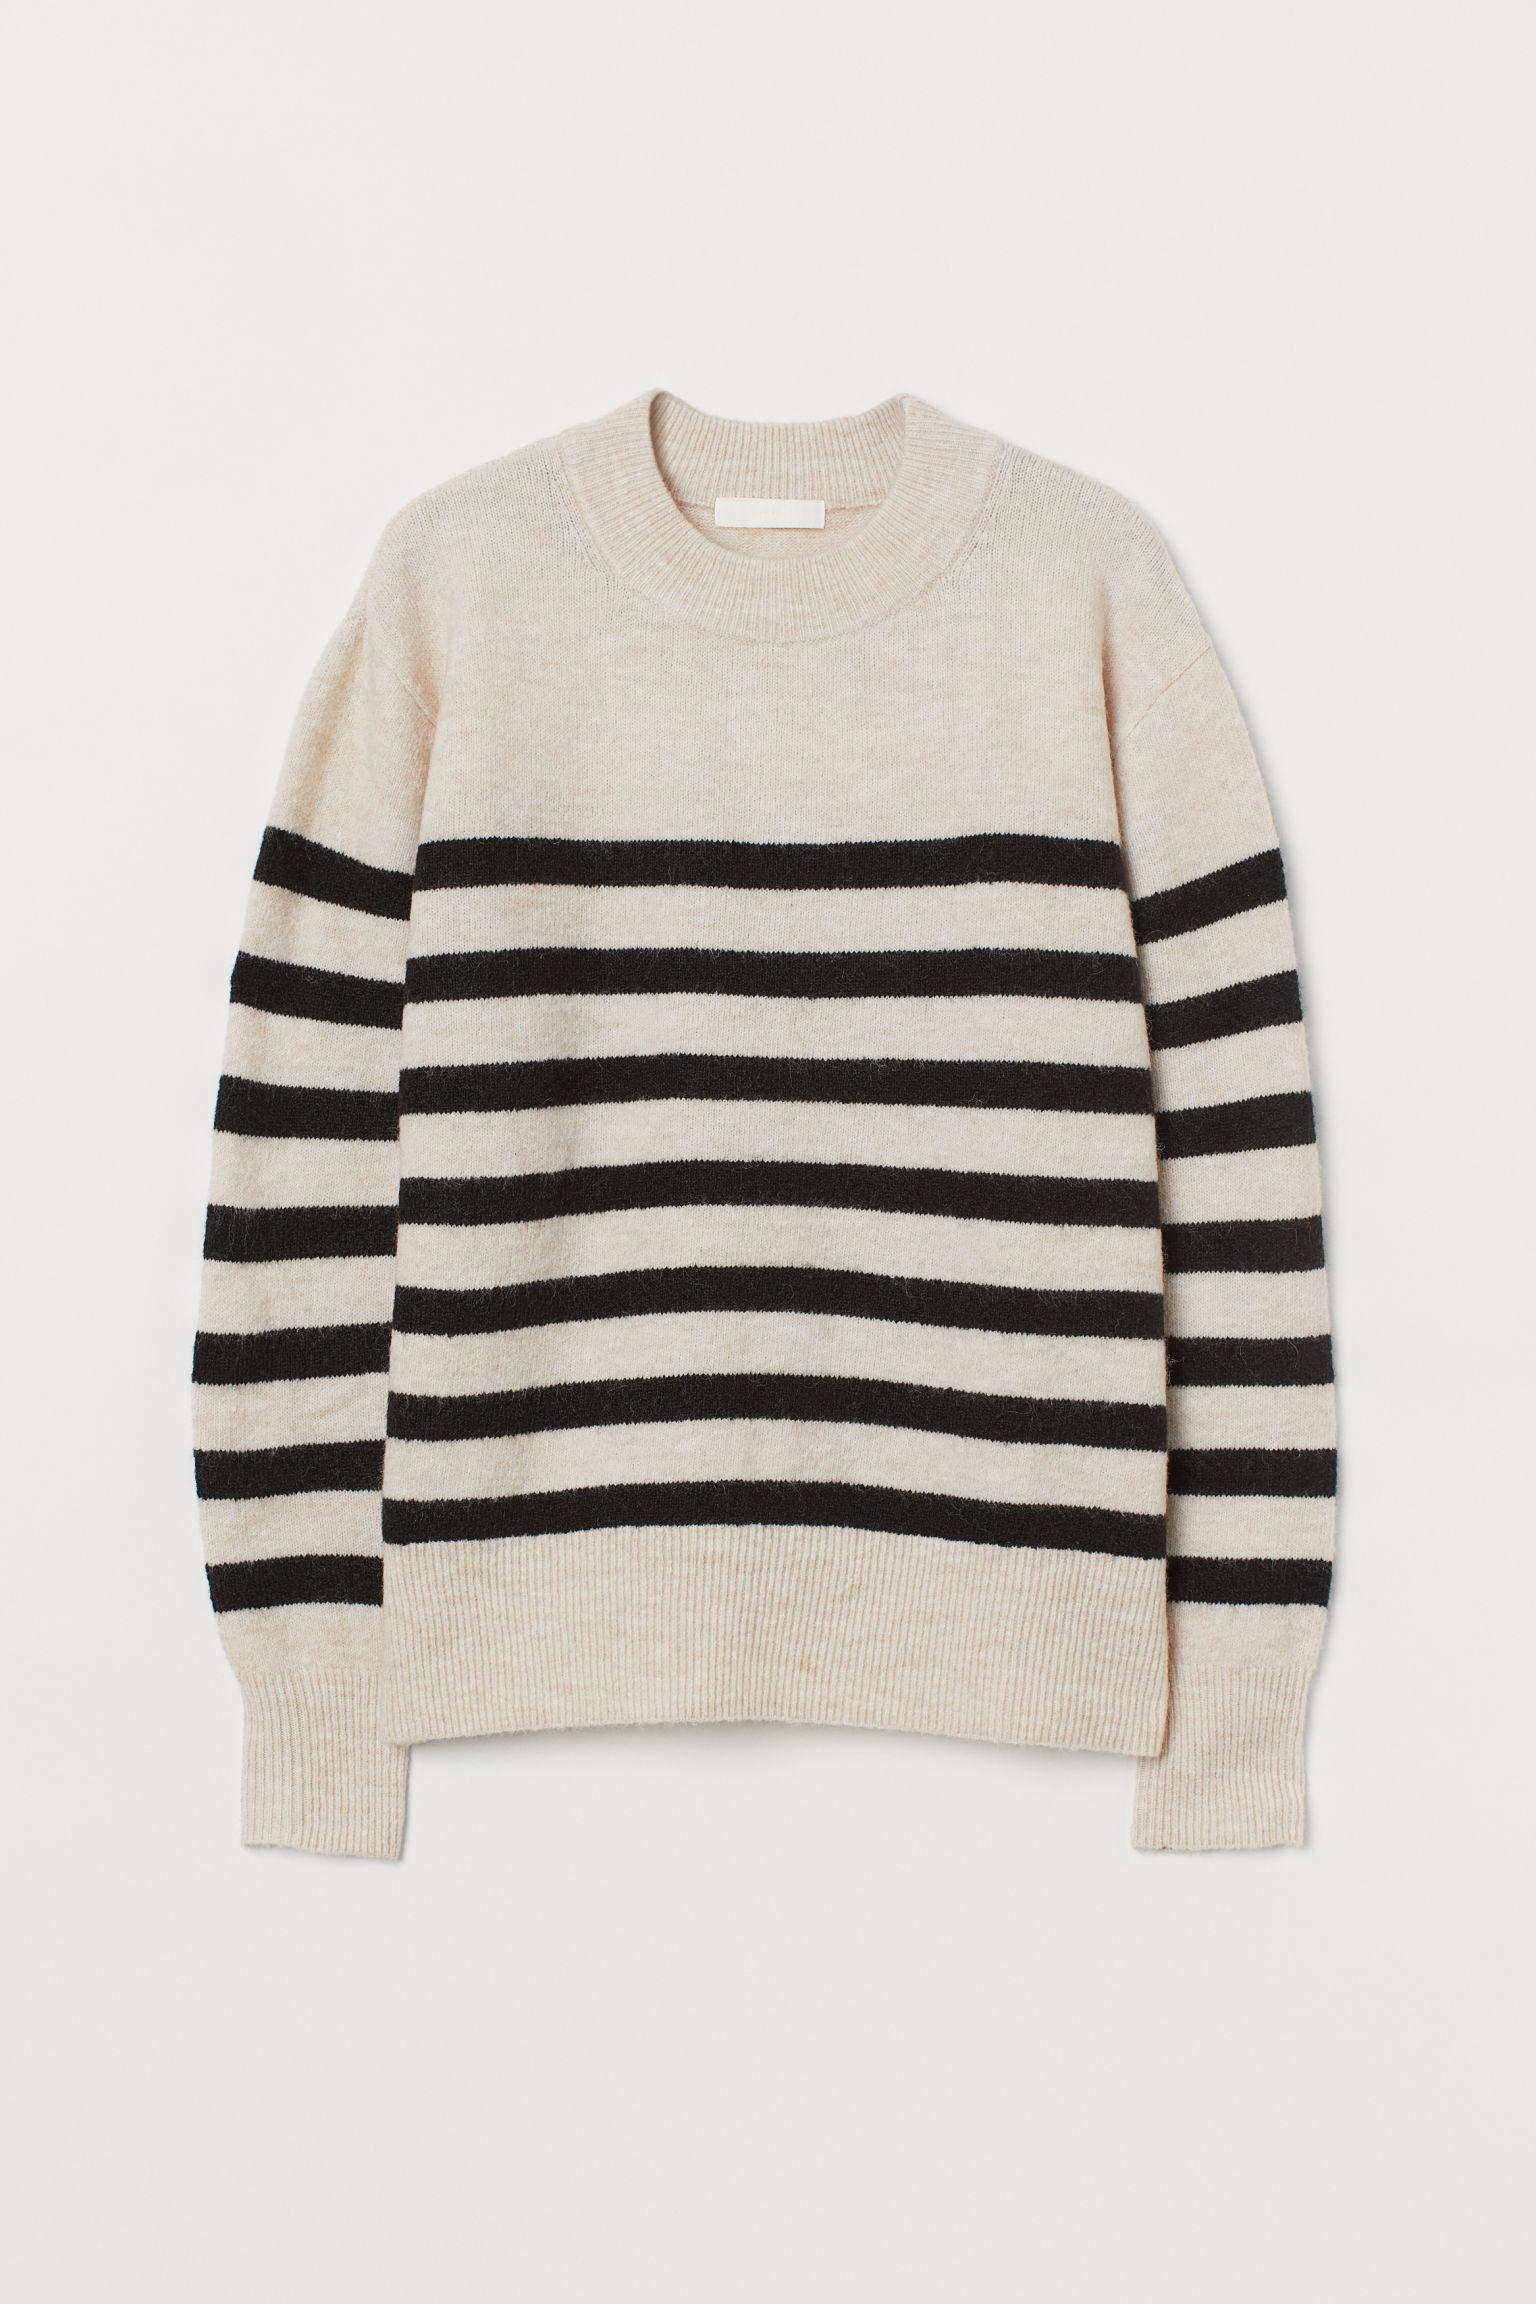 H&M Wool Fine-knit Sweater in Beige (Black) - Lyst